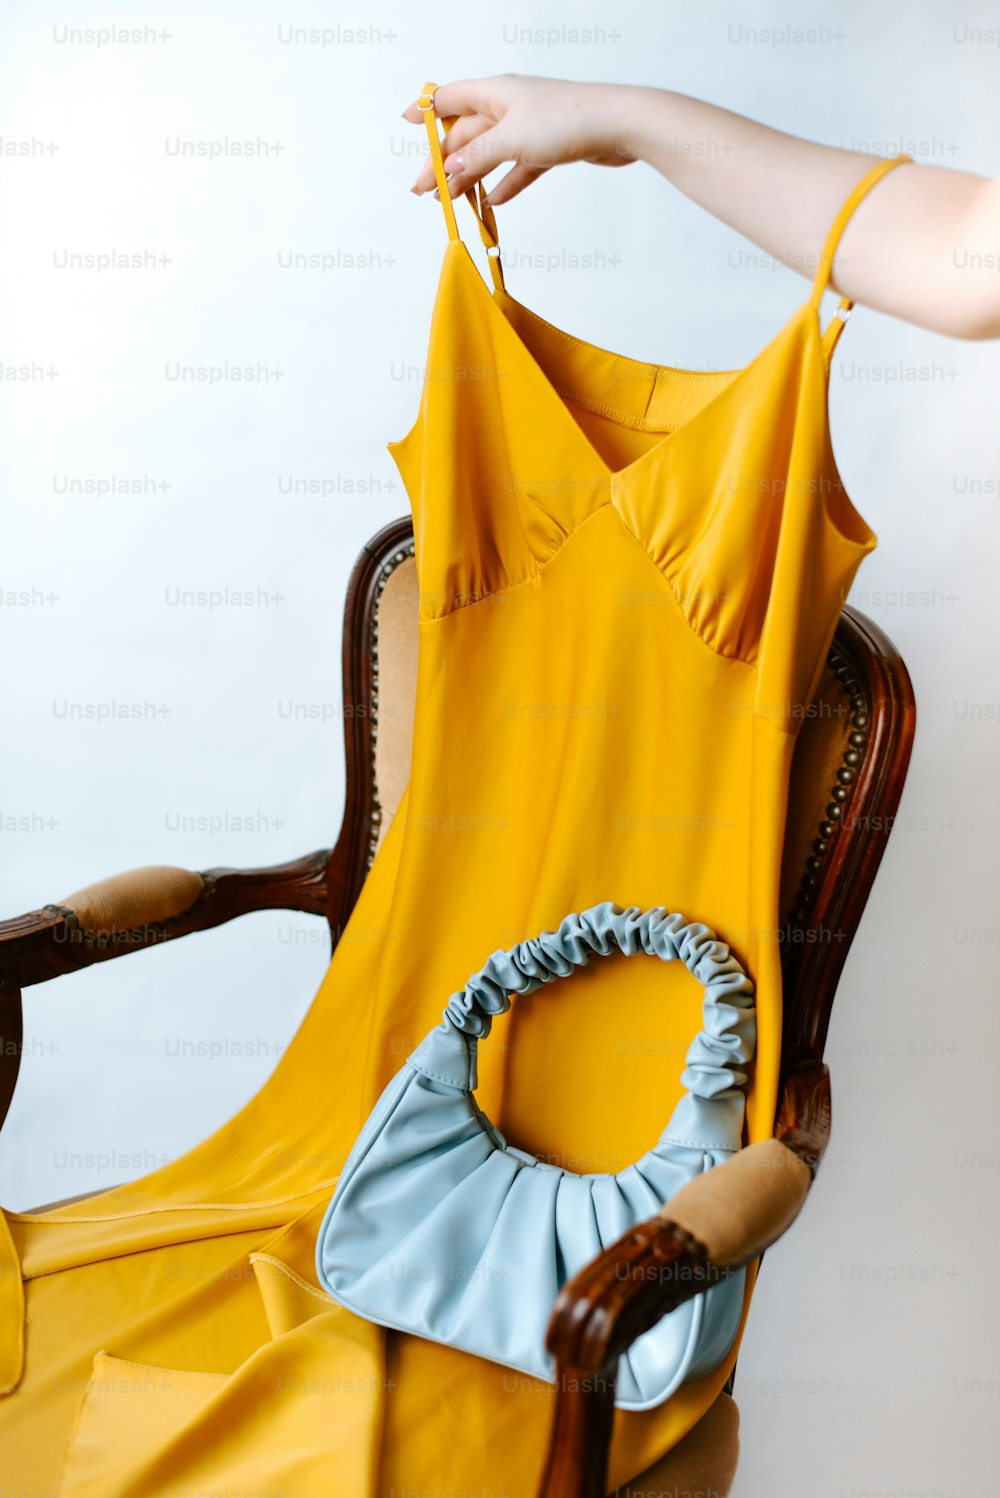 Una donna tiene un vestito giallo su una sedia